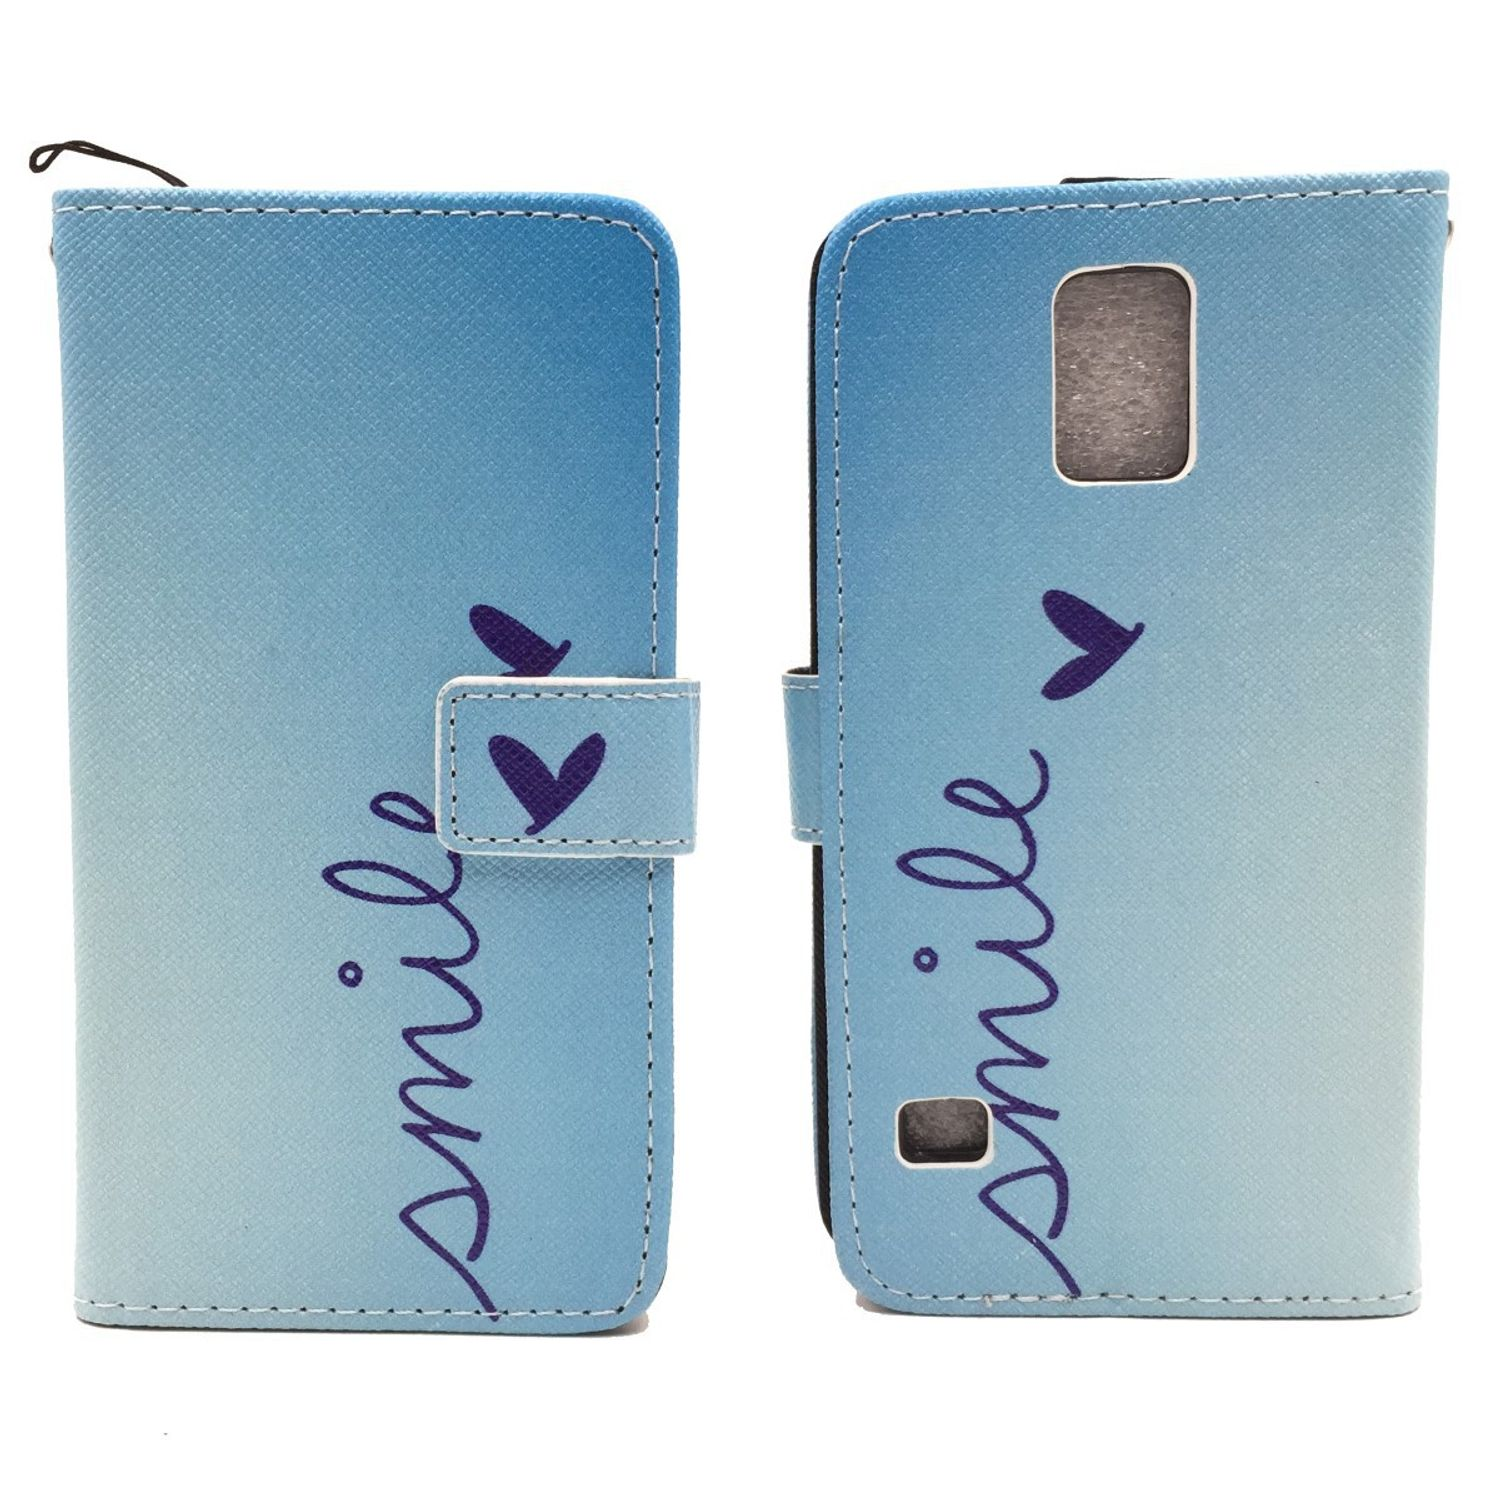 KÖNIG DESIGN Handyhülle, Galaxy S5 Neo, / S5 Samsung, Blau Bookcover